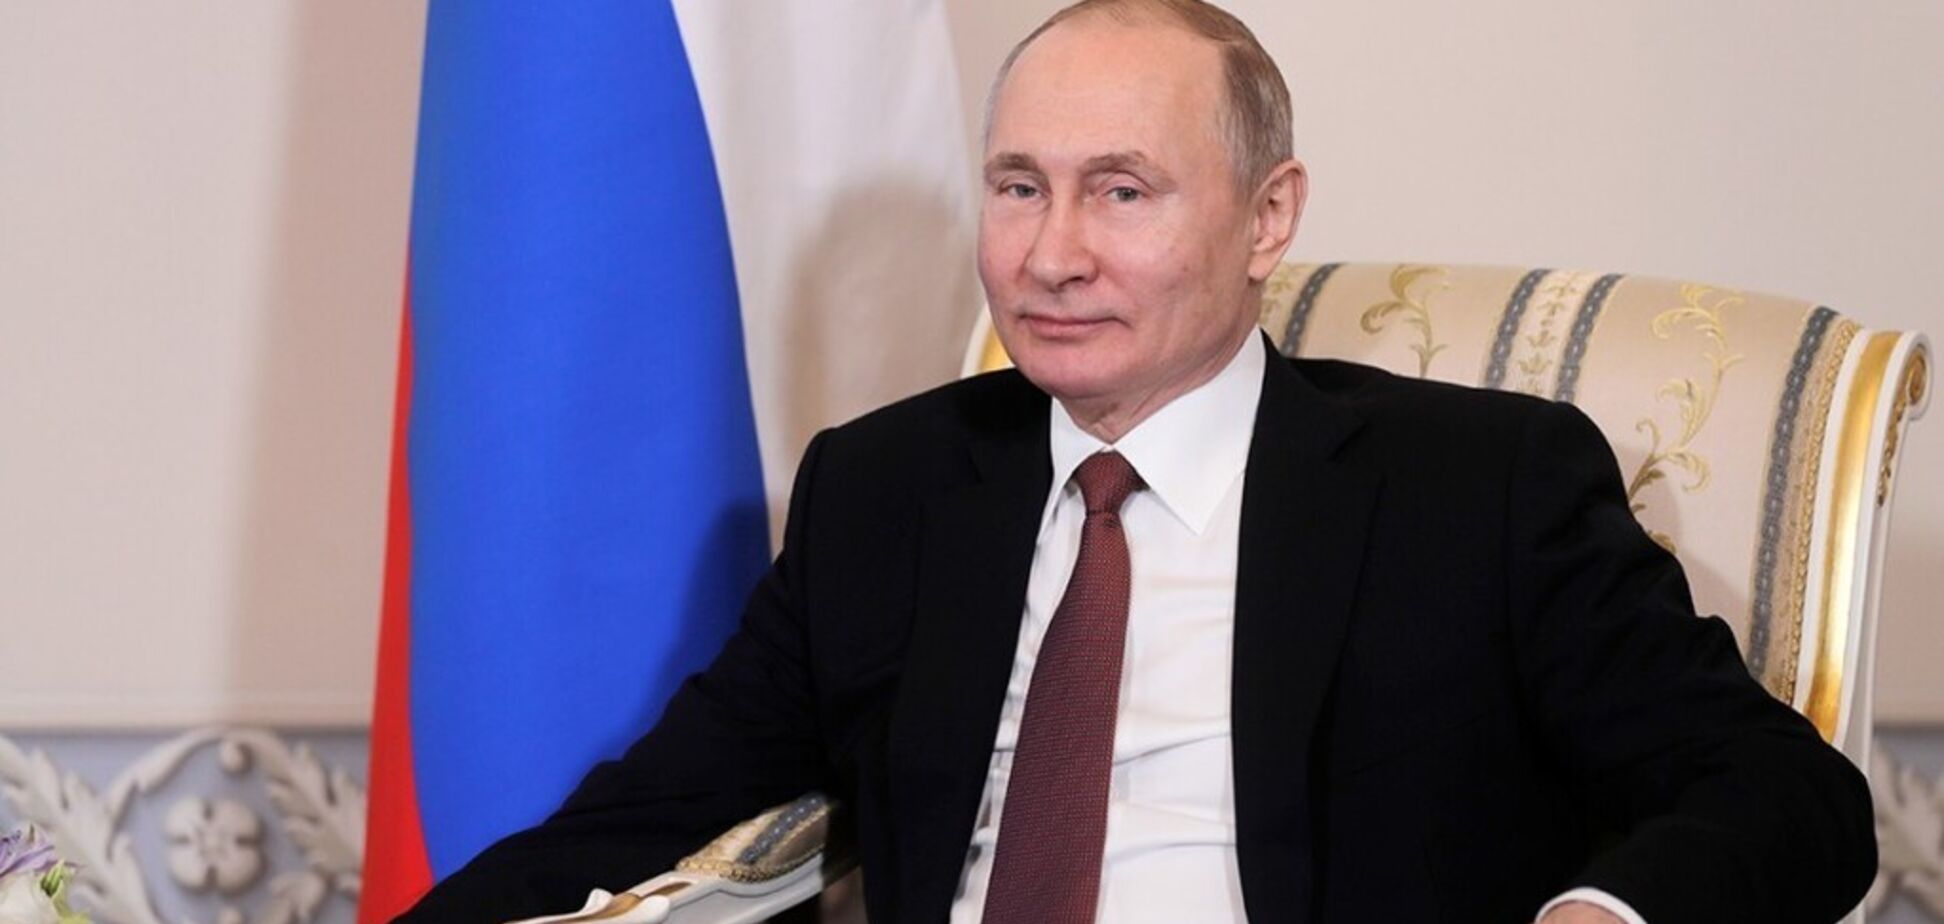 'Сім'я' наїхала на Путіна? З'явилося пояснення різкої зміни курсу Кремля